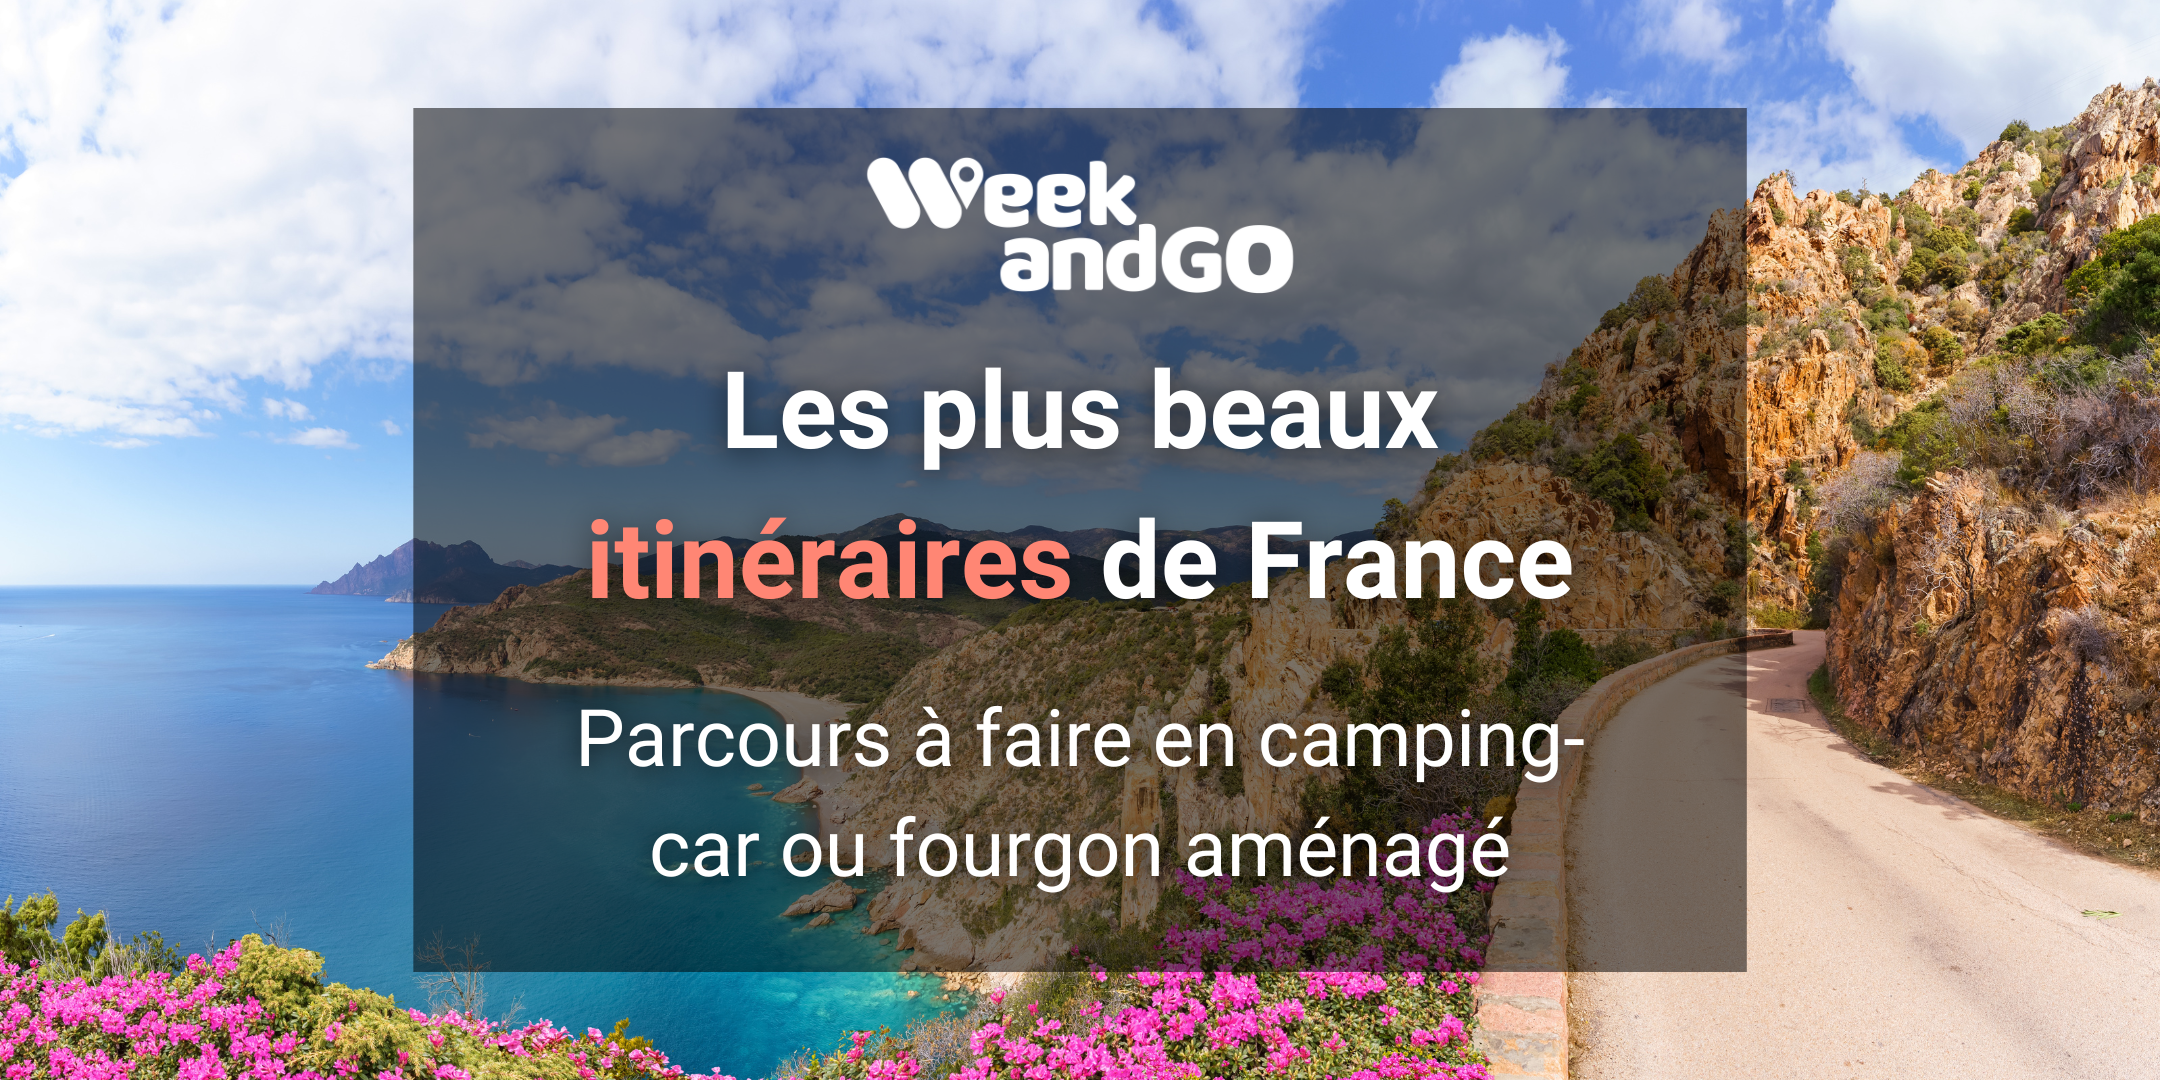 Les plus beaux itinéraires de France à faire en camping-car ou fourgon aménagé